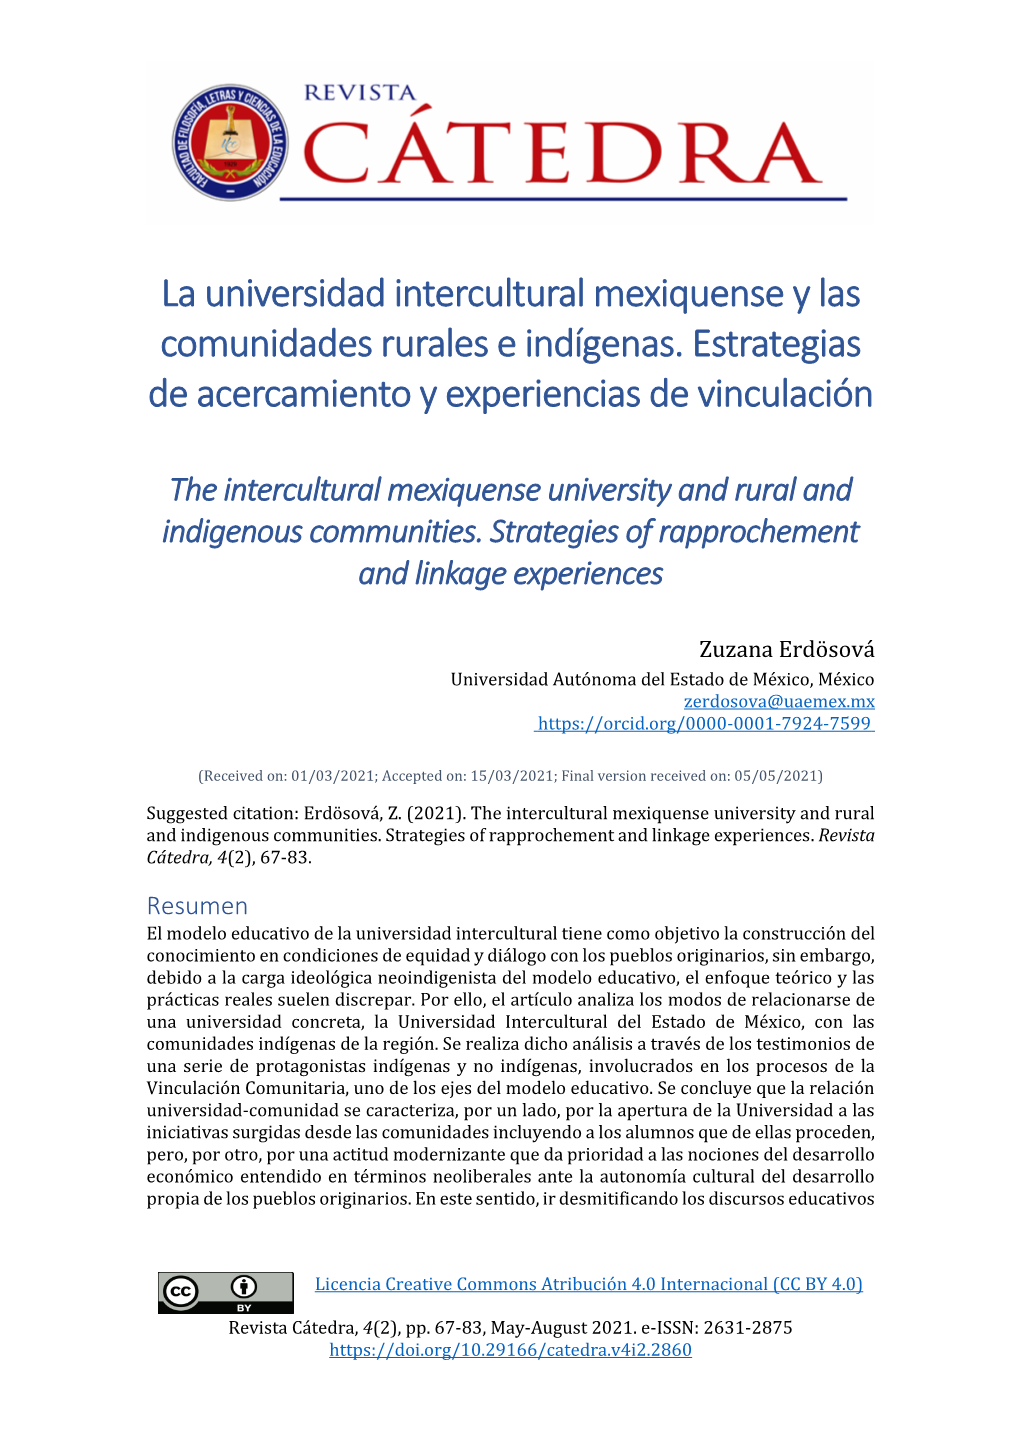 La Universidad Intercultural Mexiquense Y Las Comunidades Rurales E Indígenas